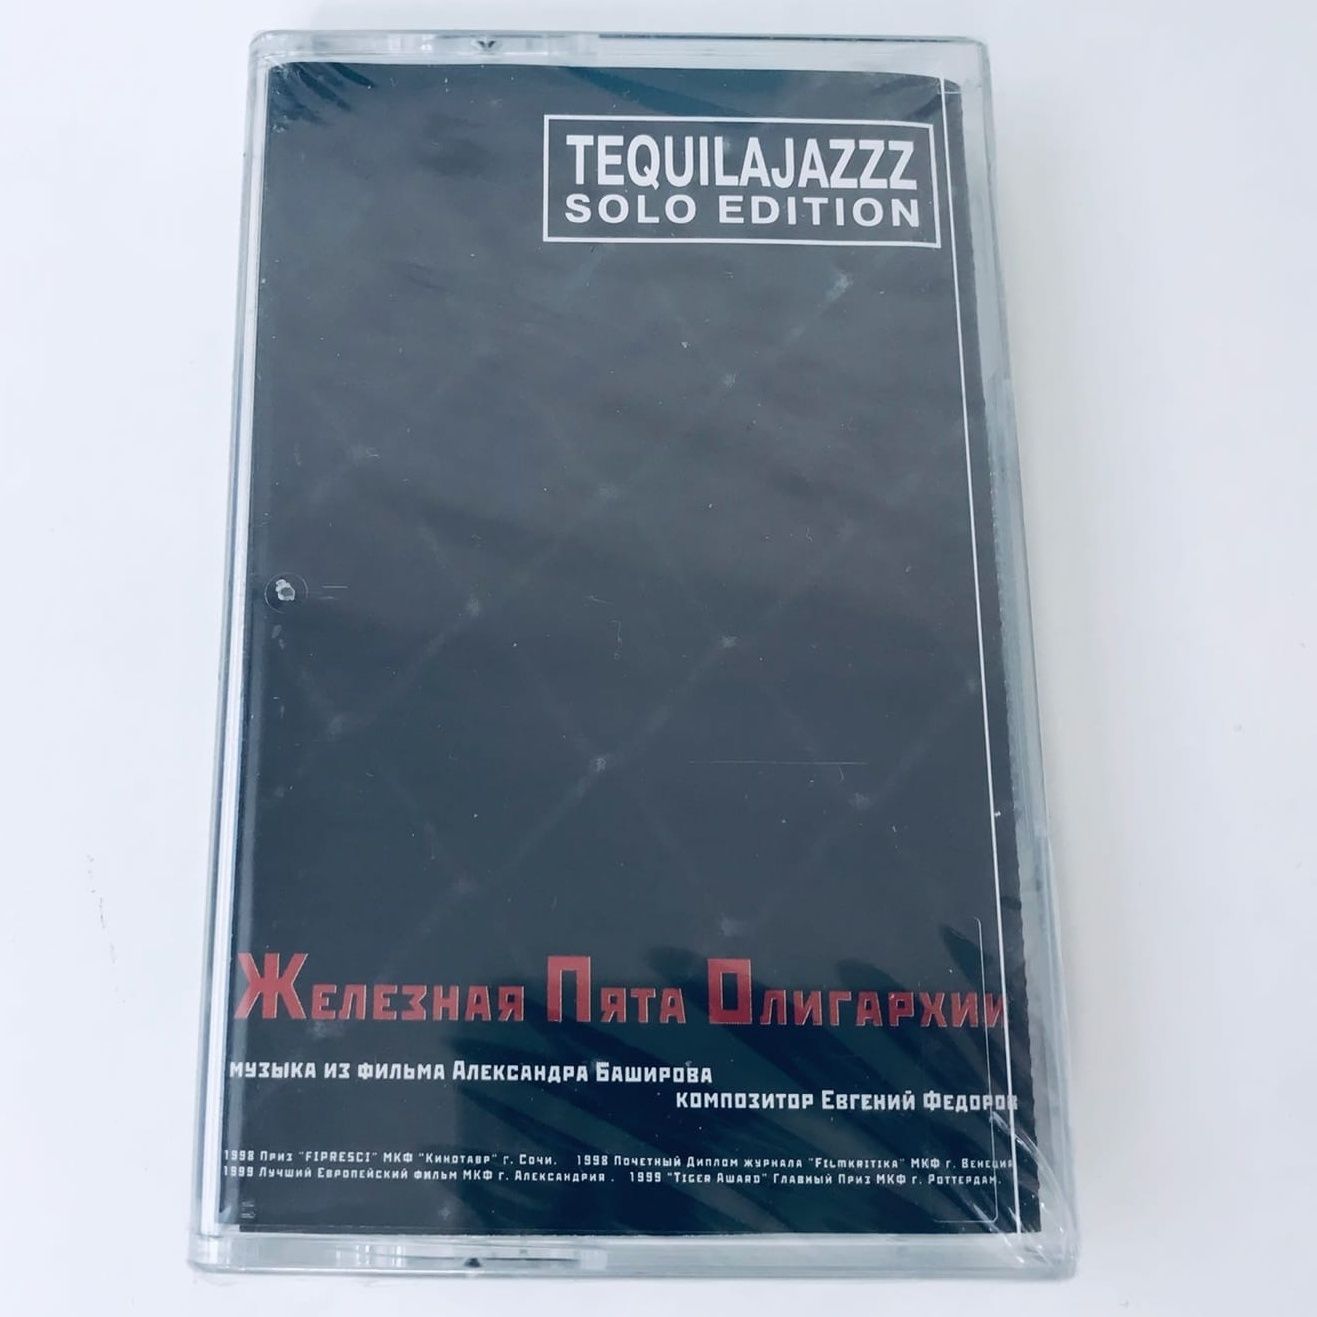 Tequilajazzz — Железная Пята Олигархии (кассета)